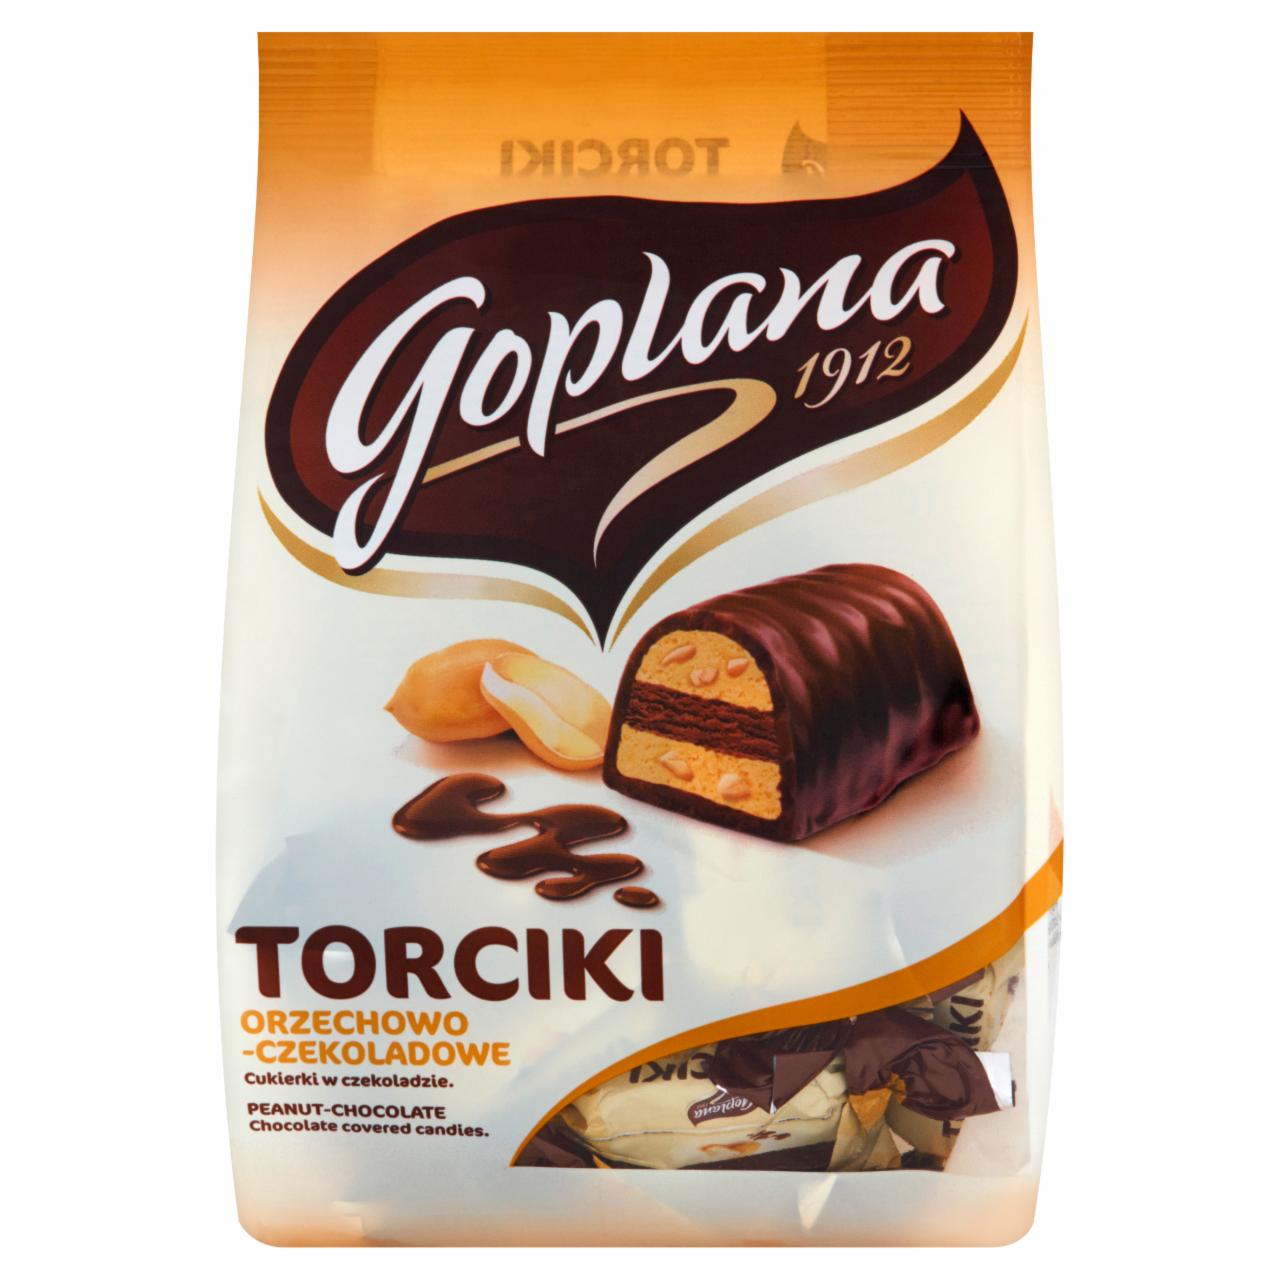 Zdjęcia - Goplana Torciki orzechowo-czekoladowe Cukierki w czekoladzie 256 g